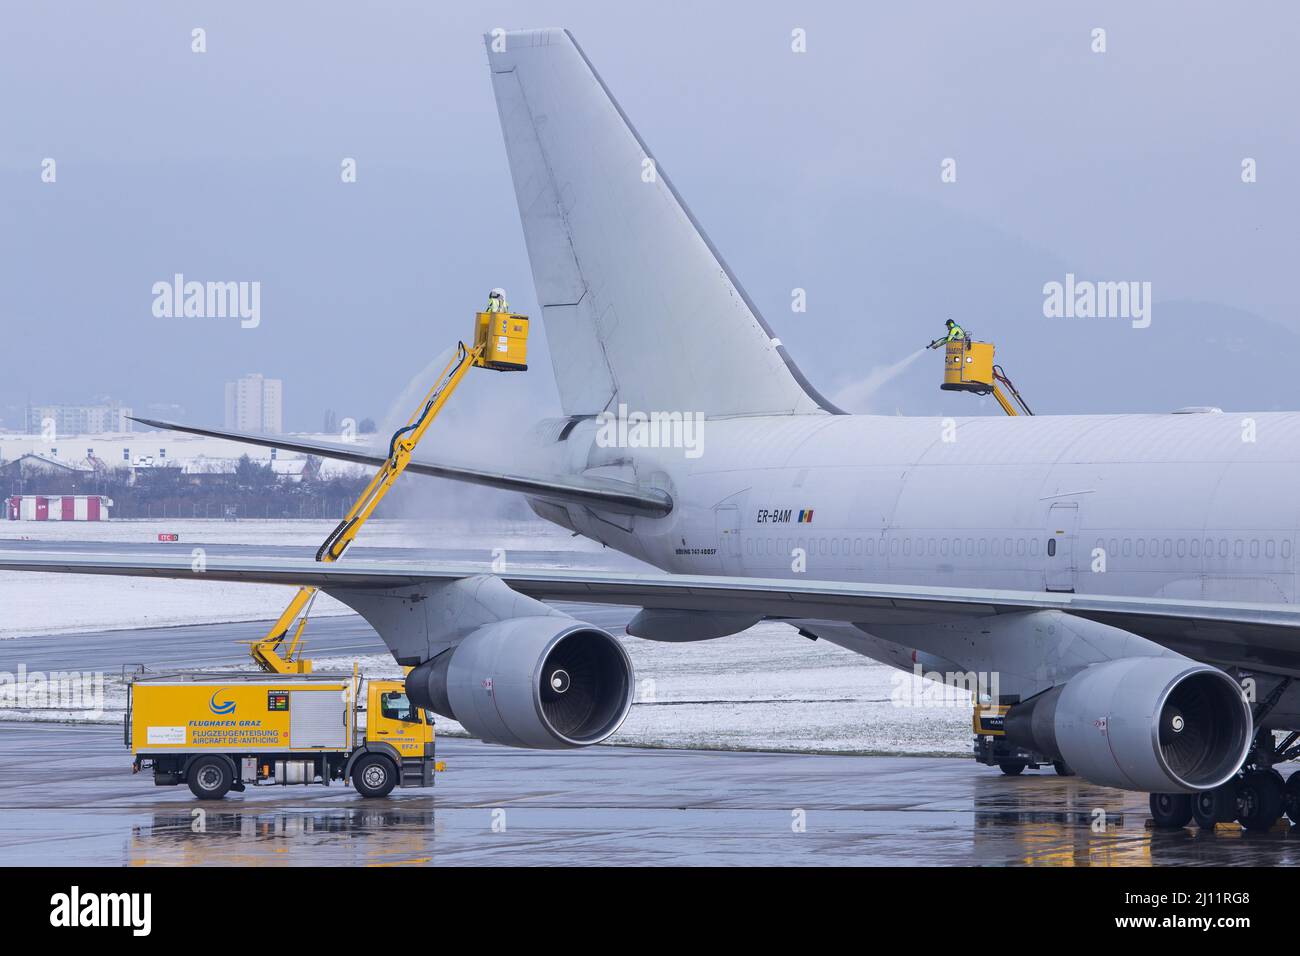 Antigivrage en cours dans un Boeing 747 de l'aéroport de Graz en Autriche par temps froid Banque D'Images